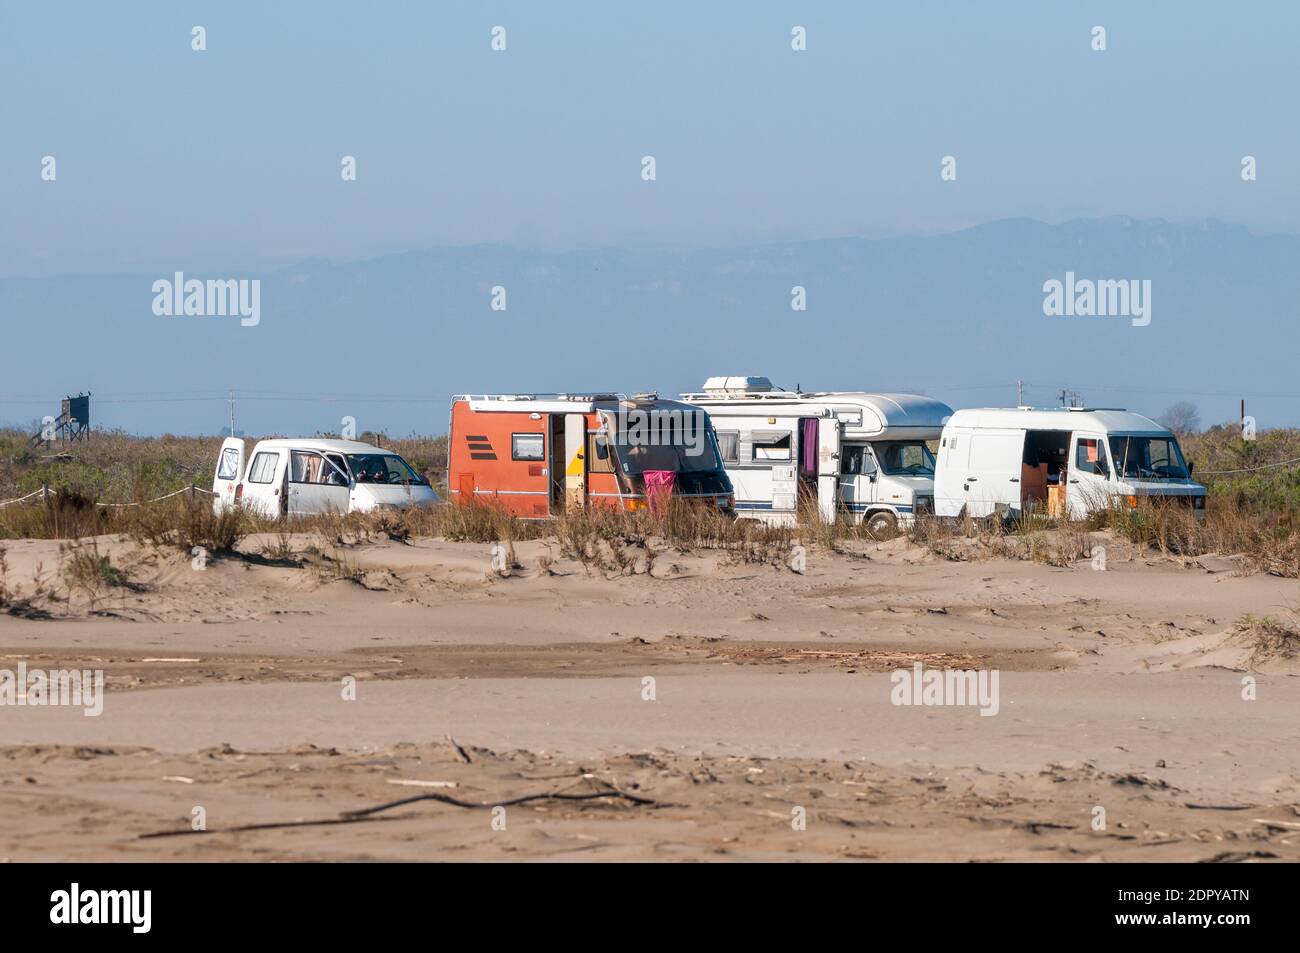 campers on the beach, Ebro delta, Tarragona, Catalonia, Spain Stock Photo